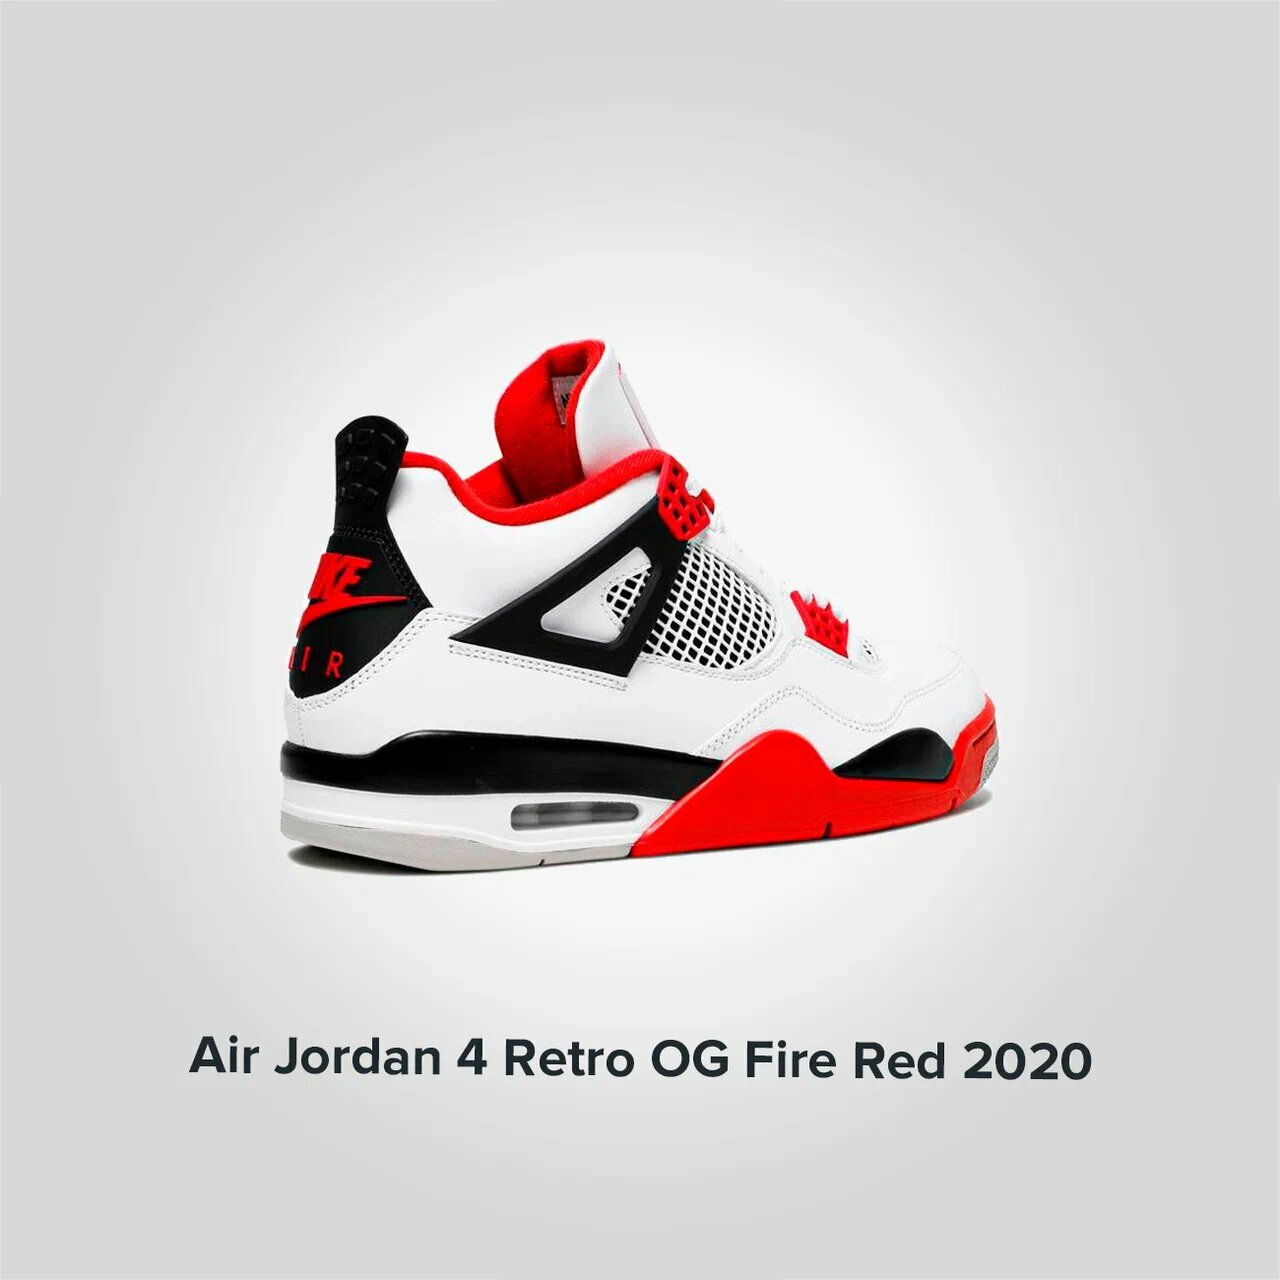 Jordan 4 Retro OG Fire Red 2020